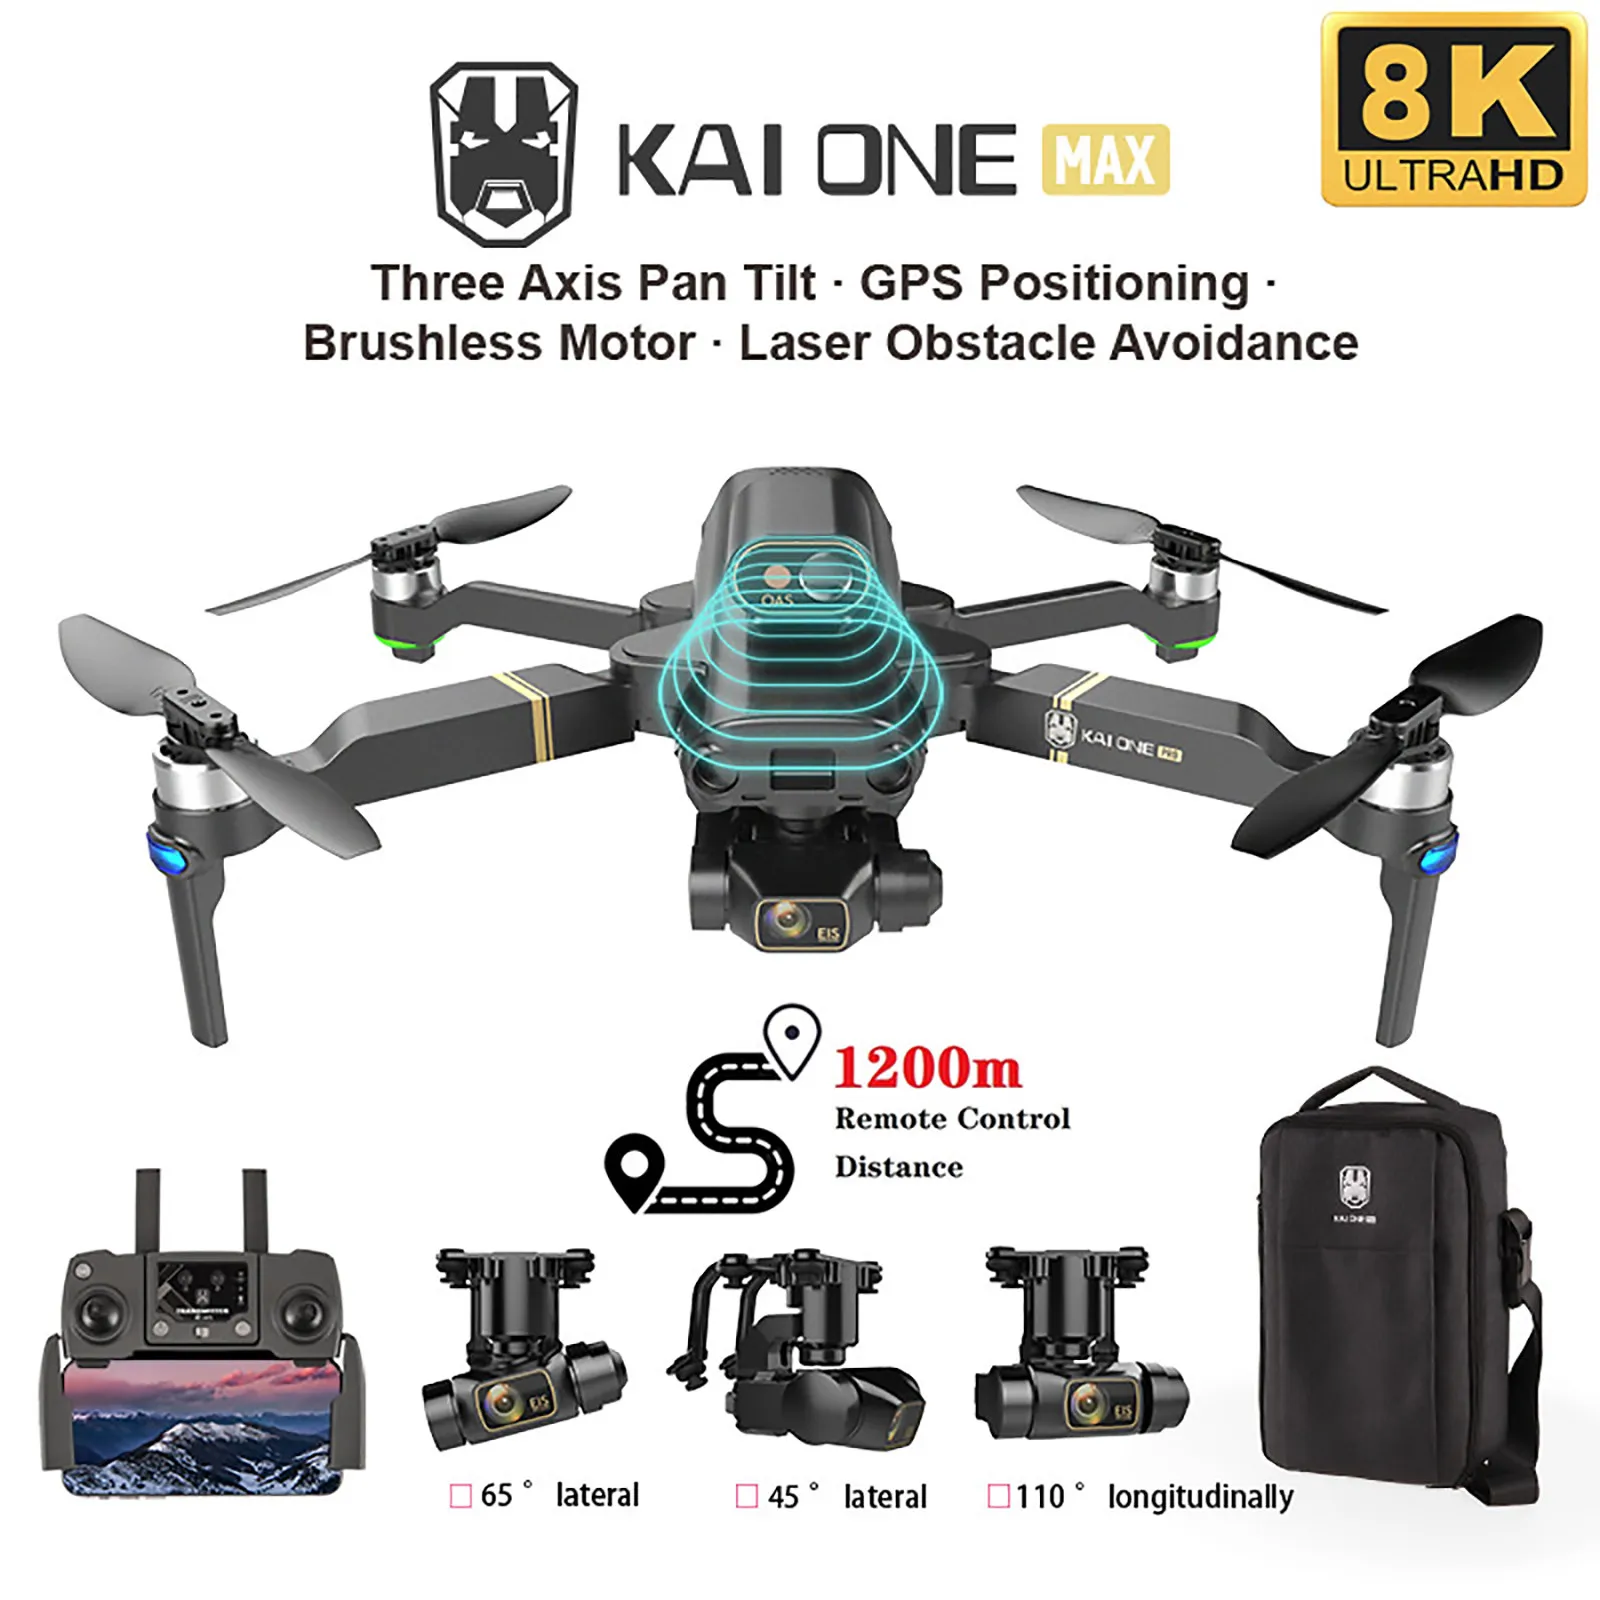 

Новинка Профессиональный Квадрокоптер KAI ONE MAX 8K с двумя камерами GPS 5G Wifi 3-осевой карданный подвес 360 ° обход препятствий Радиоуправляемый кв...